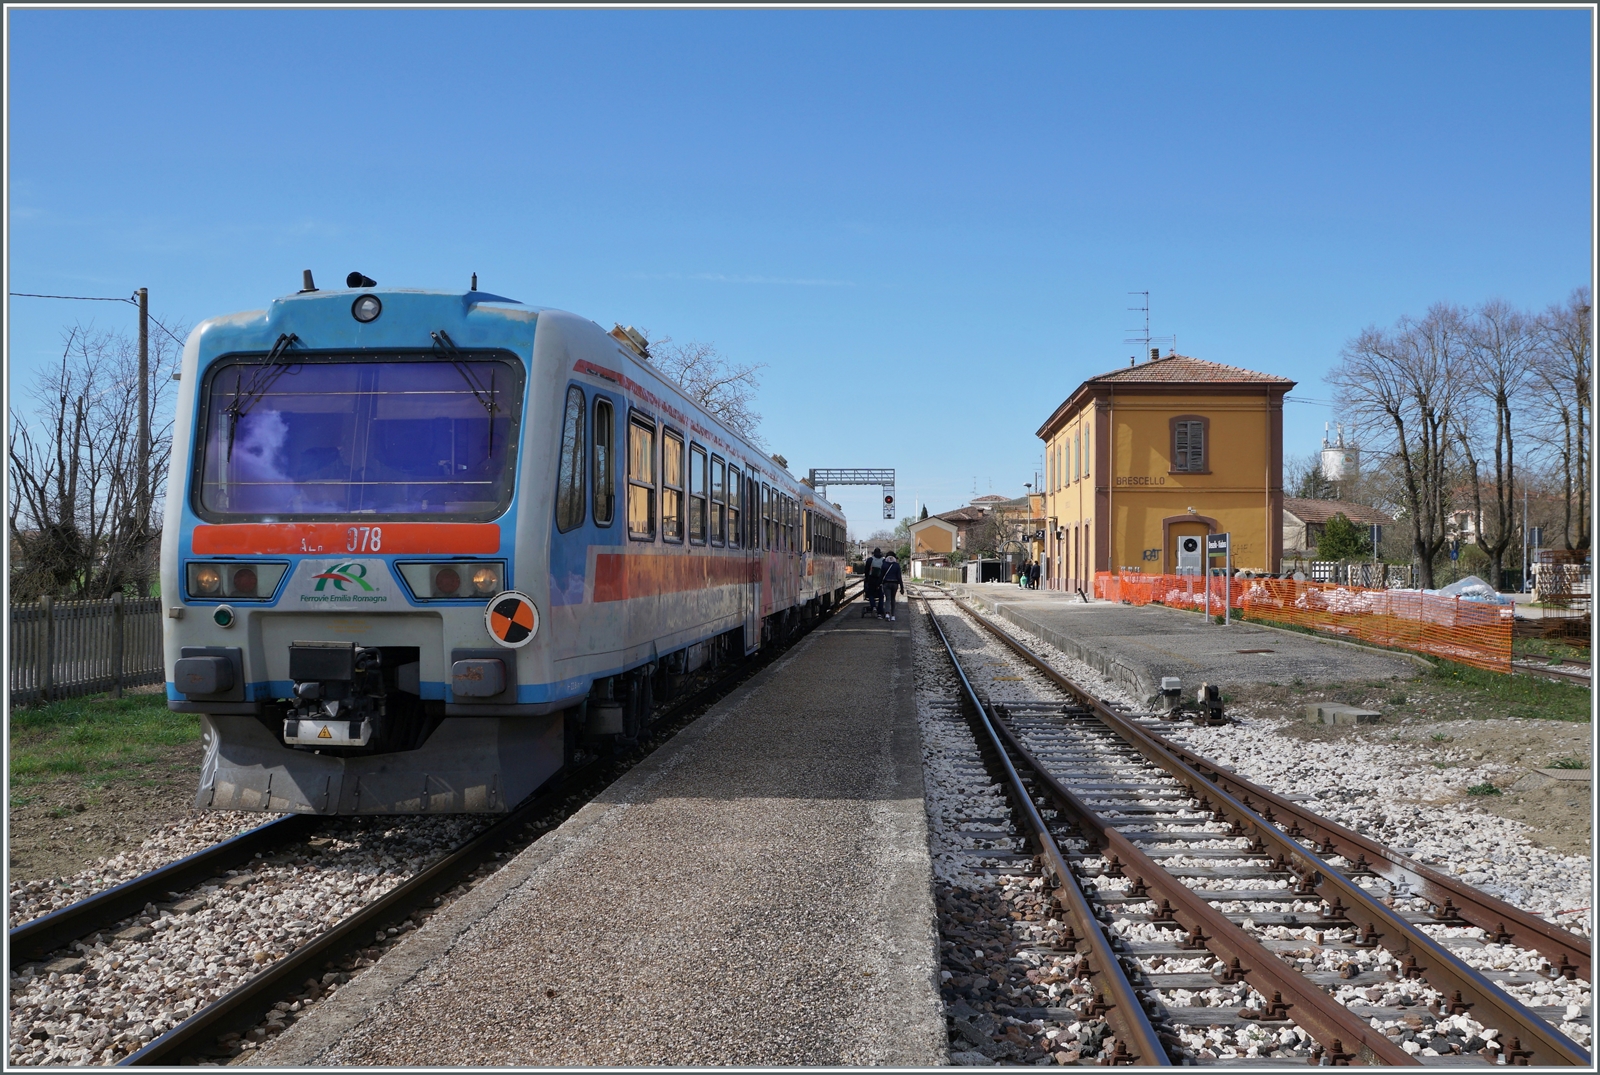 Die beiden FER Aln 663 078 und 077 verlassen nach eine kurzen Halt den Bahnhof von Brescello Viadana. Die beiden Triebwagen sind als FS Trenitlia TPER Regioanlzug 90322 von Parma nach Suzzara unterwegs. 

15. März 2023